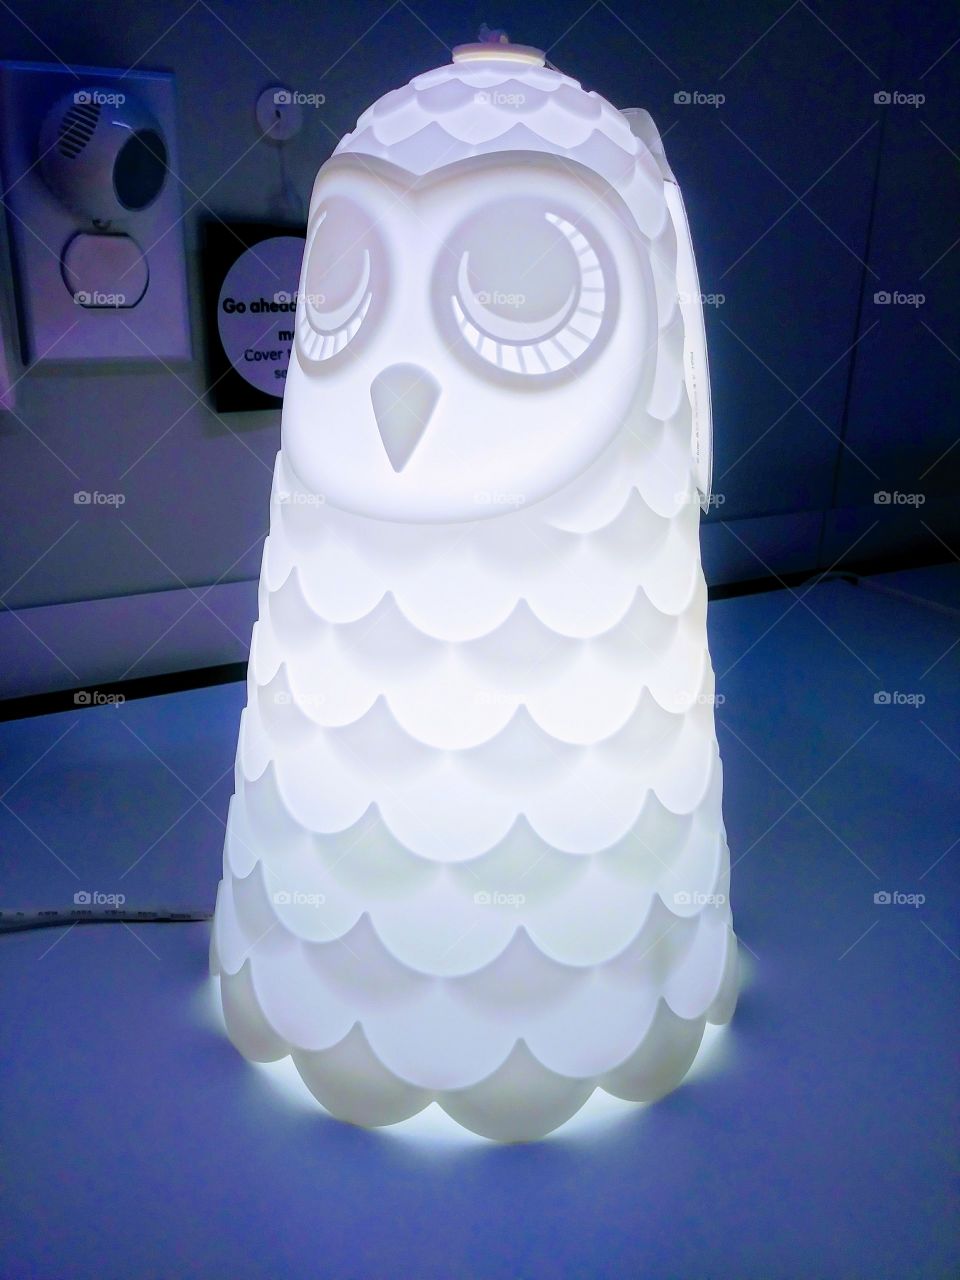 owl lamp light